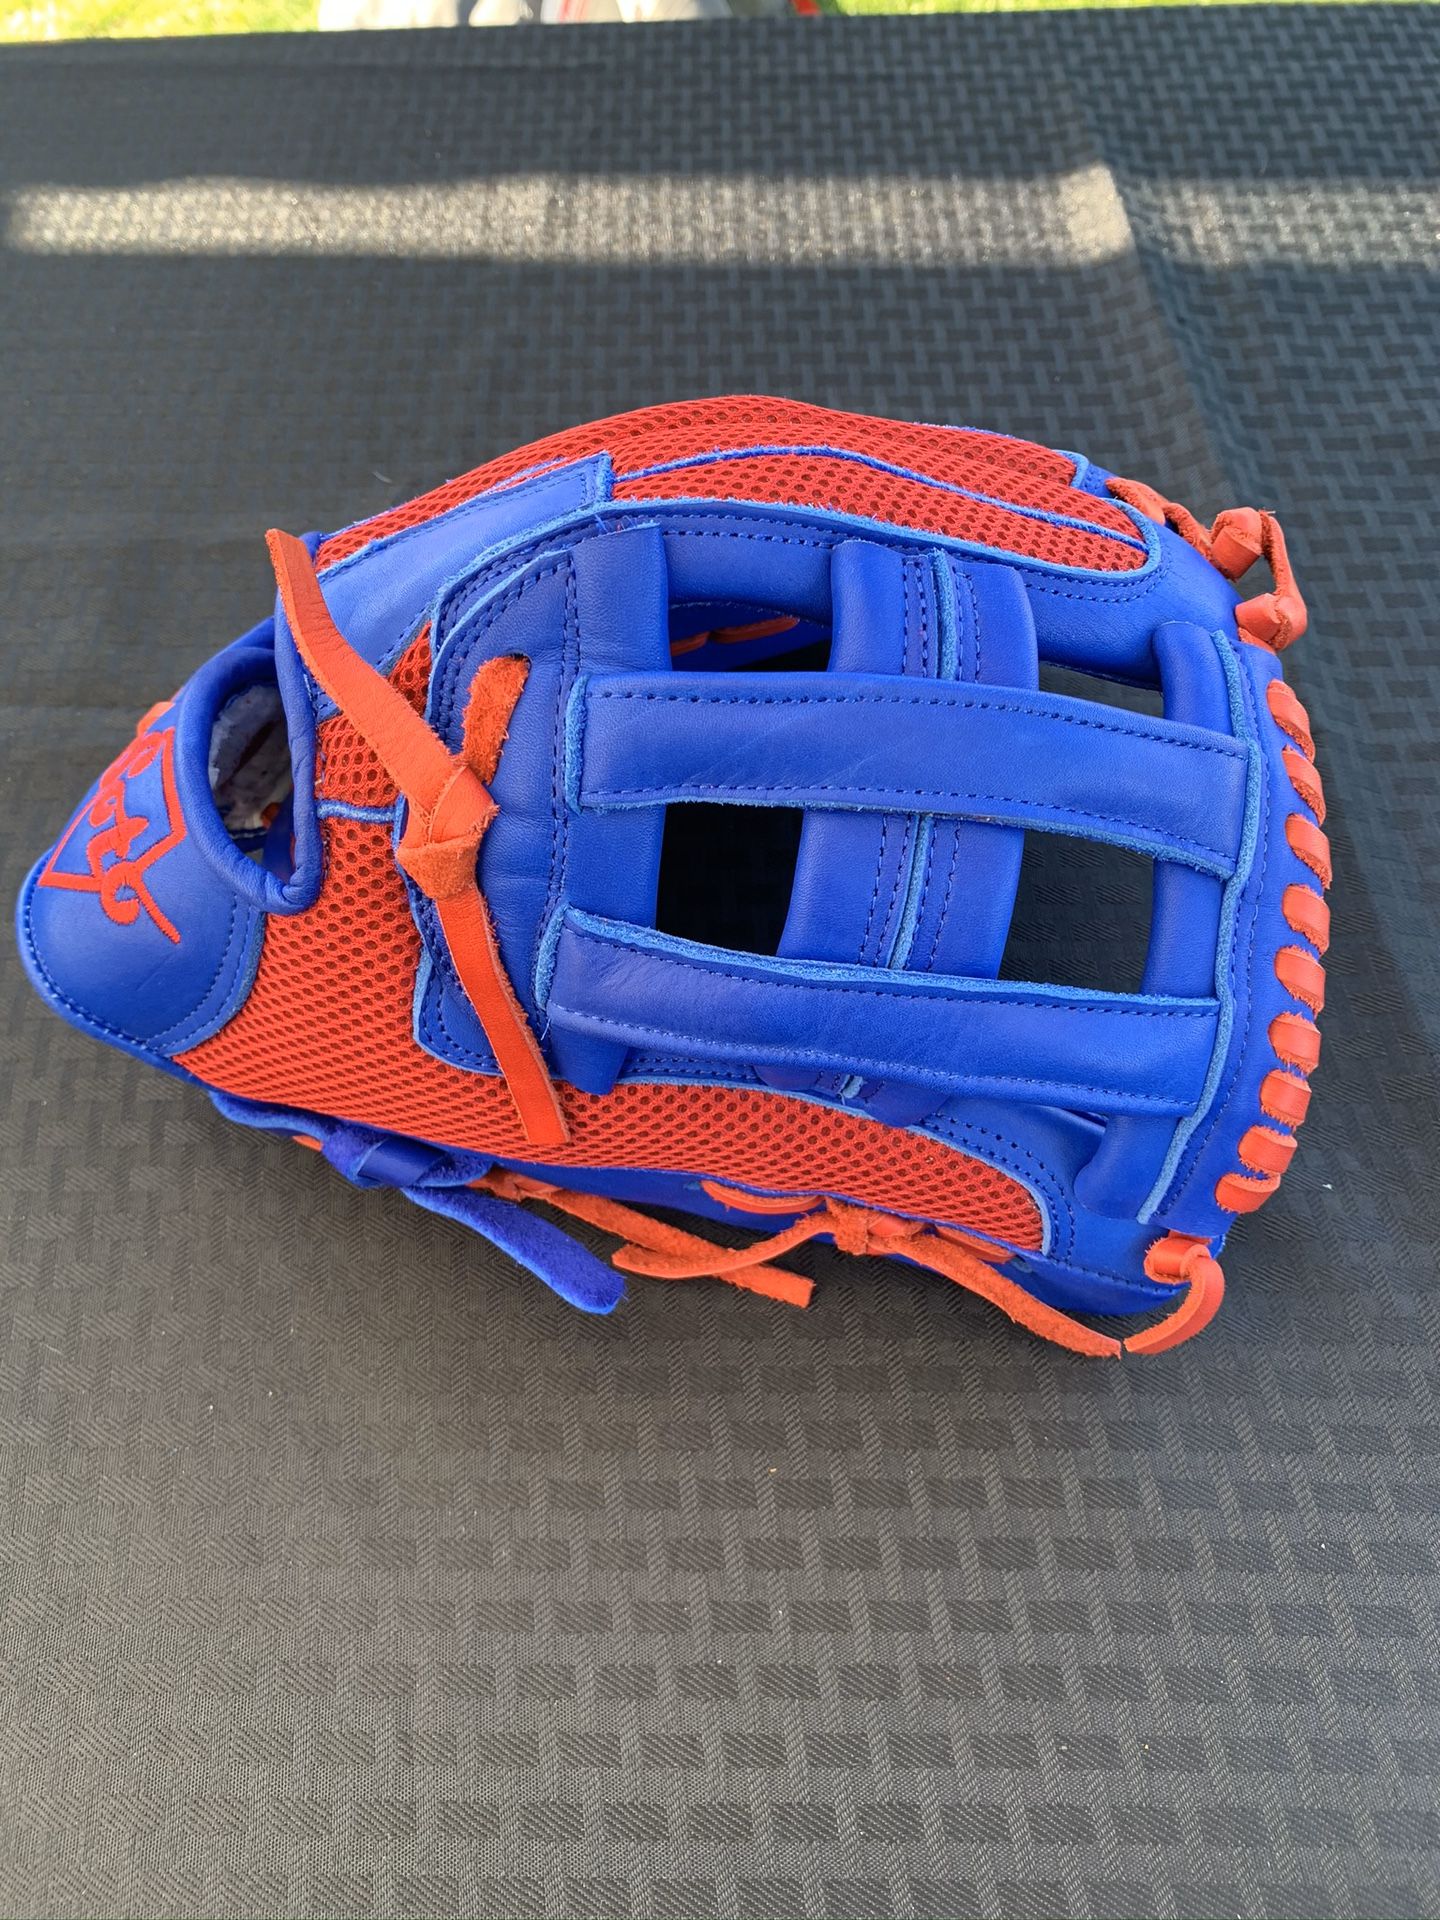 Soto custom glove